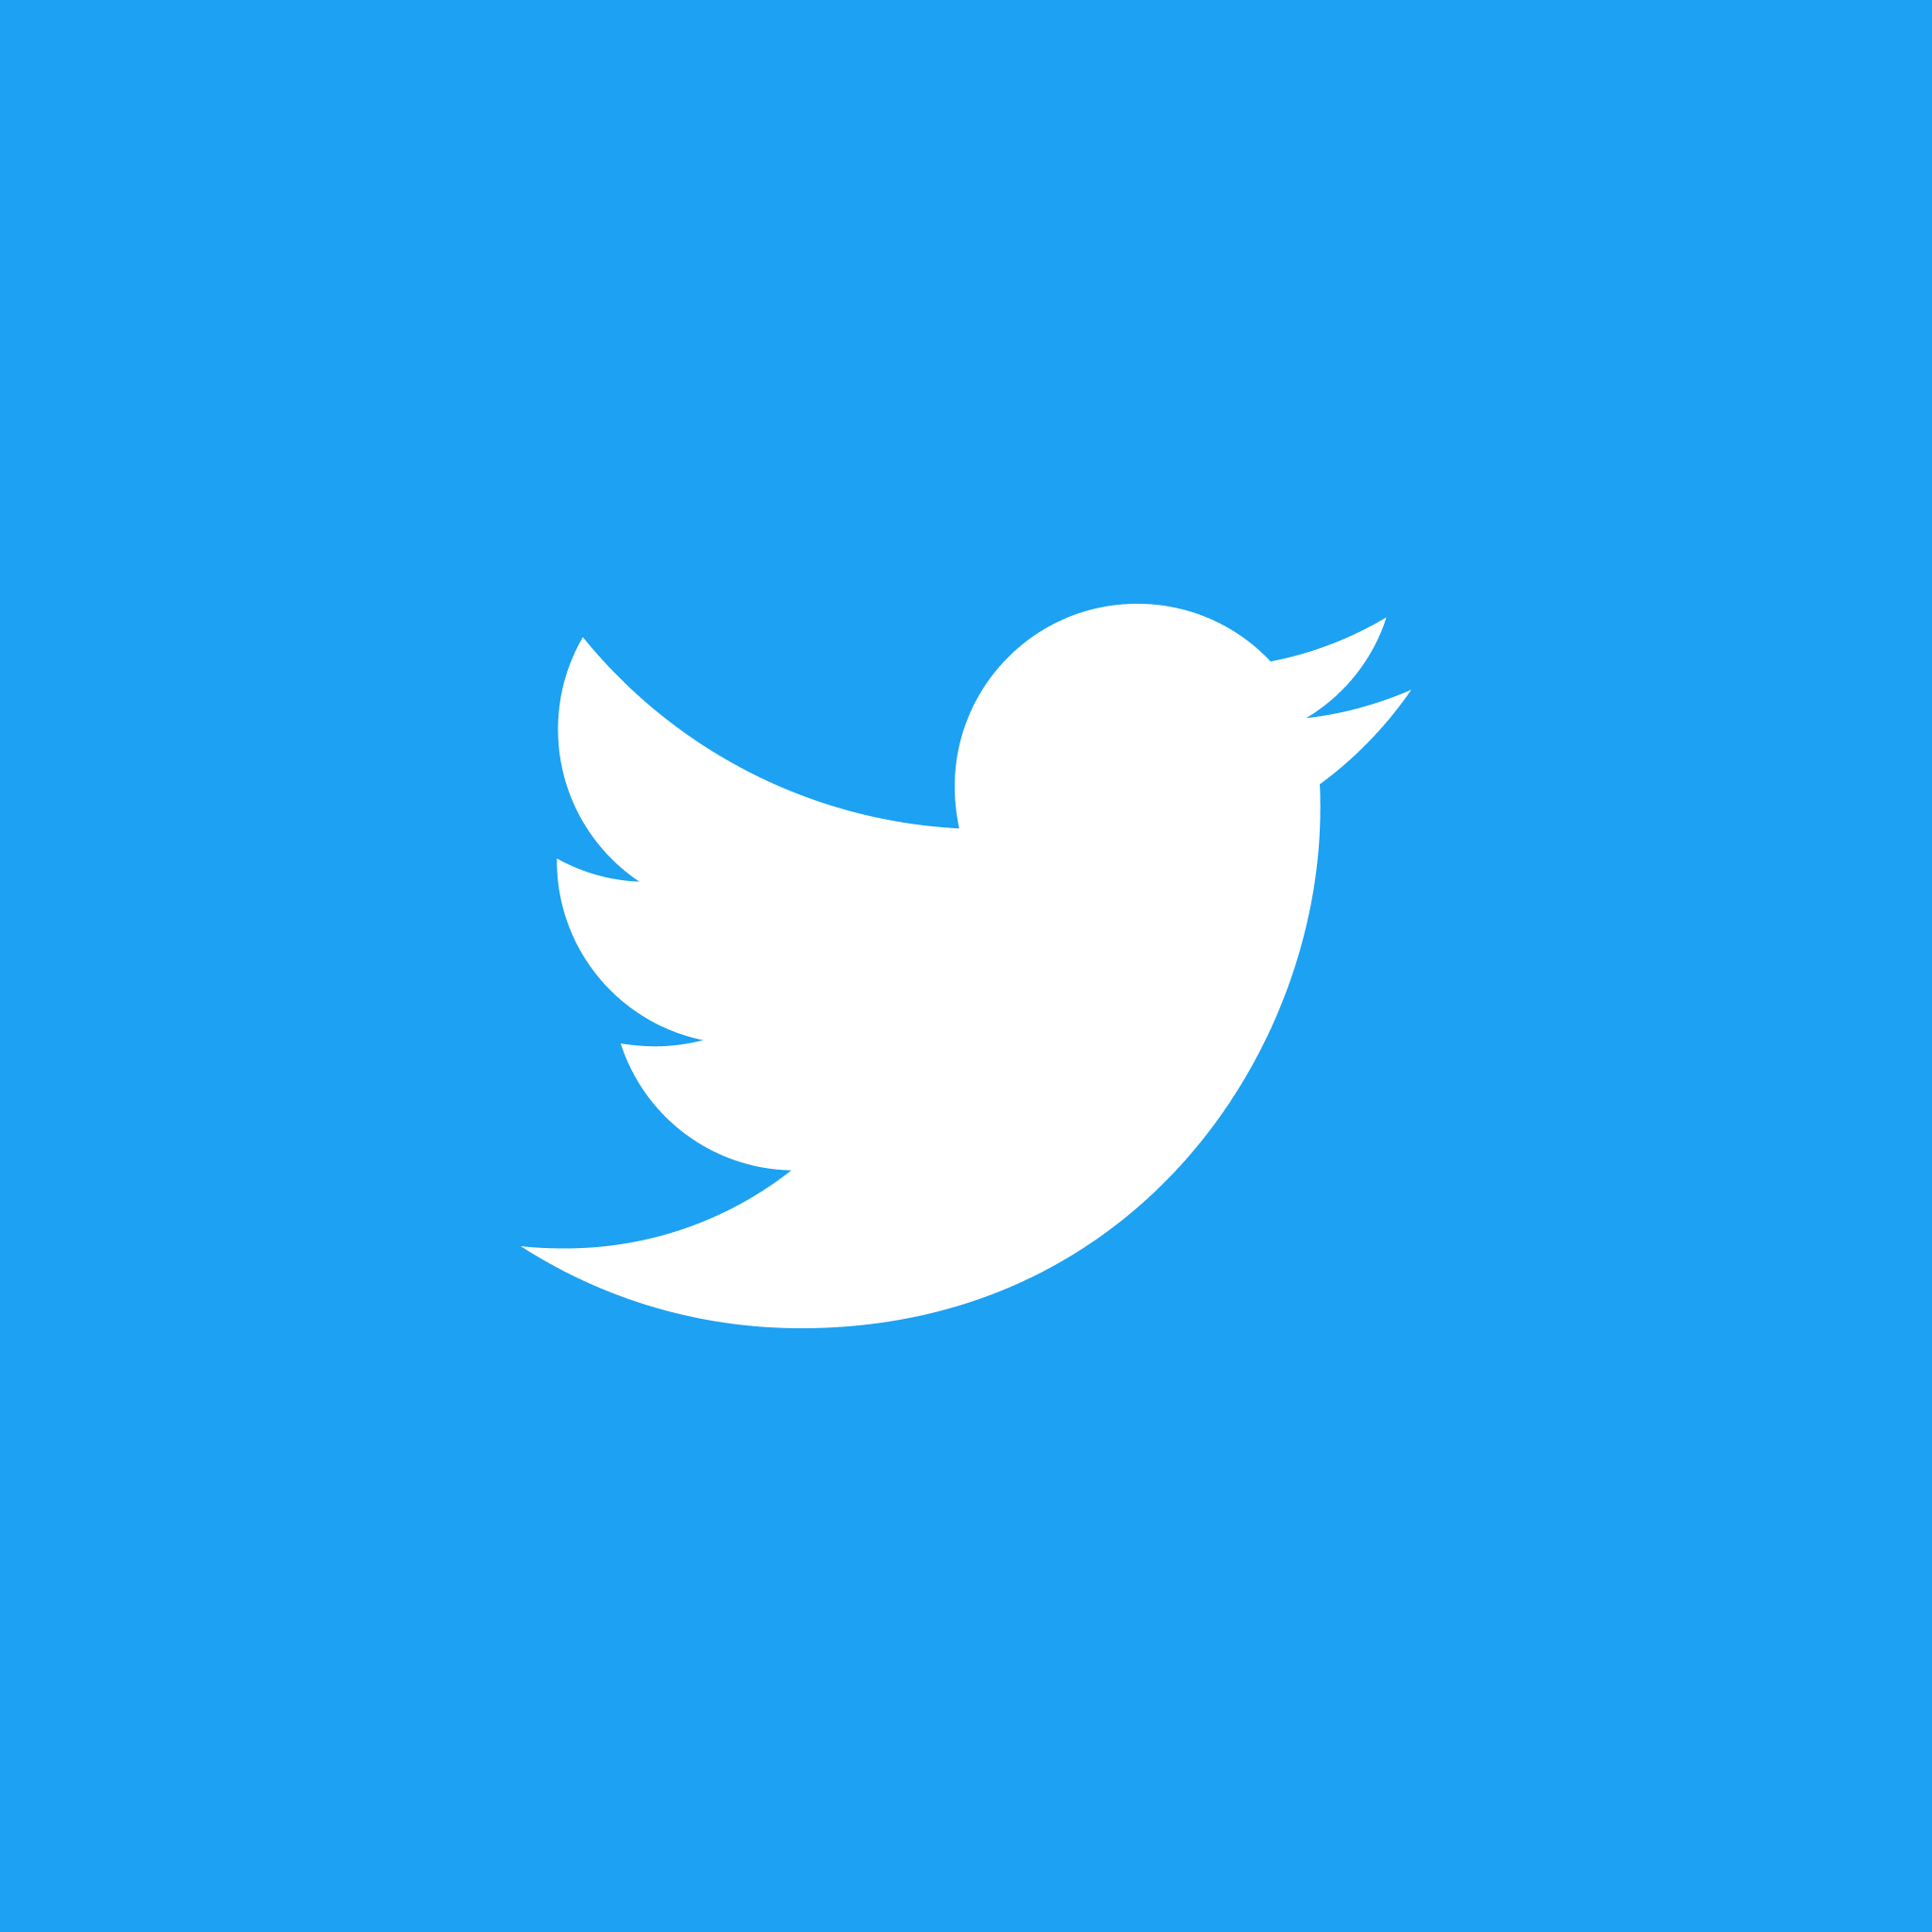 #1 slika Kako promijeniti ikonu Twittera iz oznake 'X' u Plavu pticu